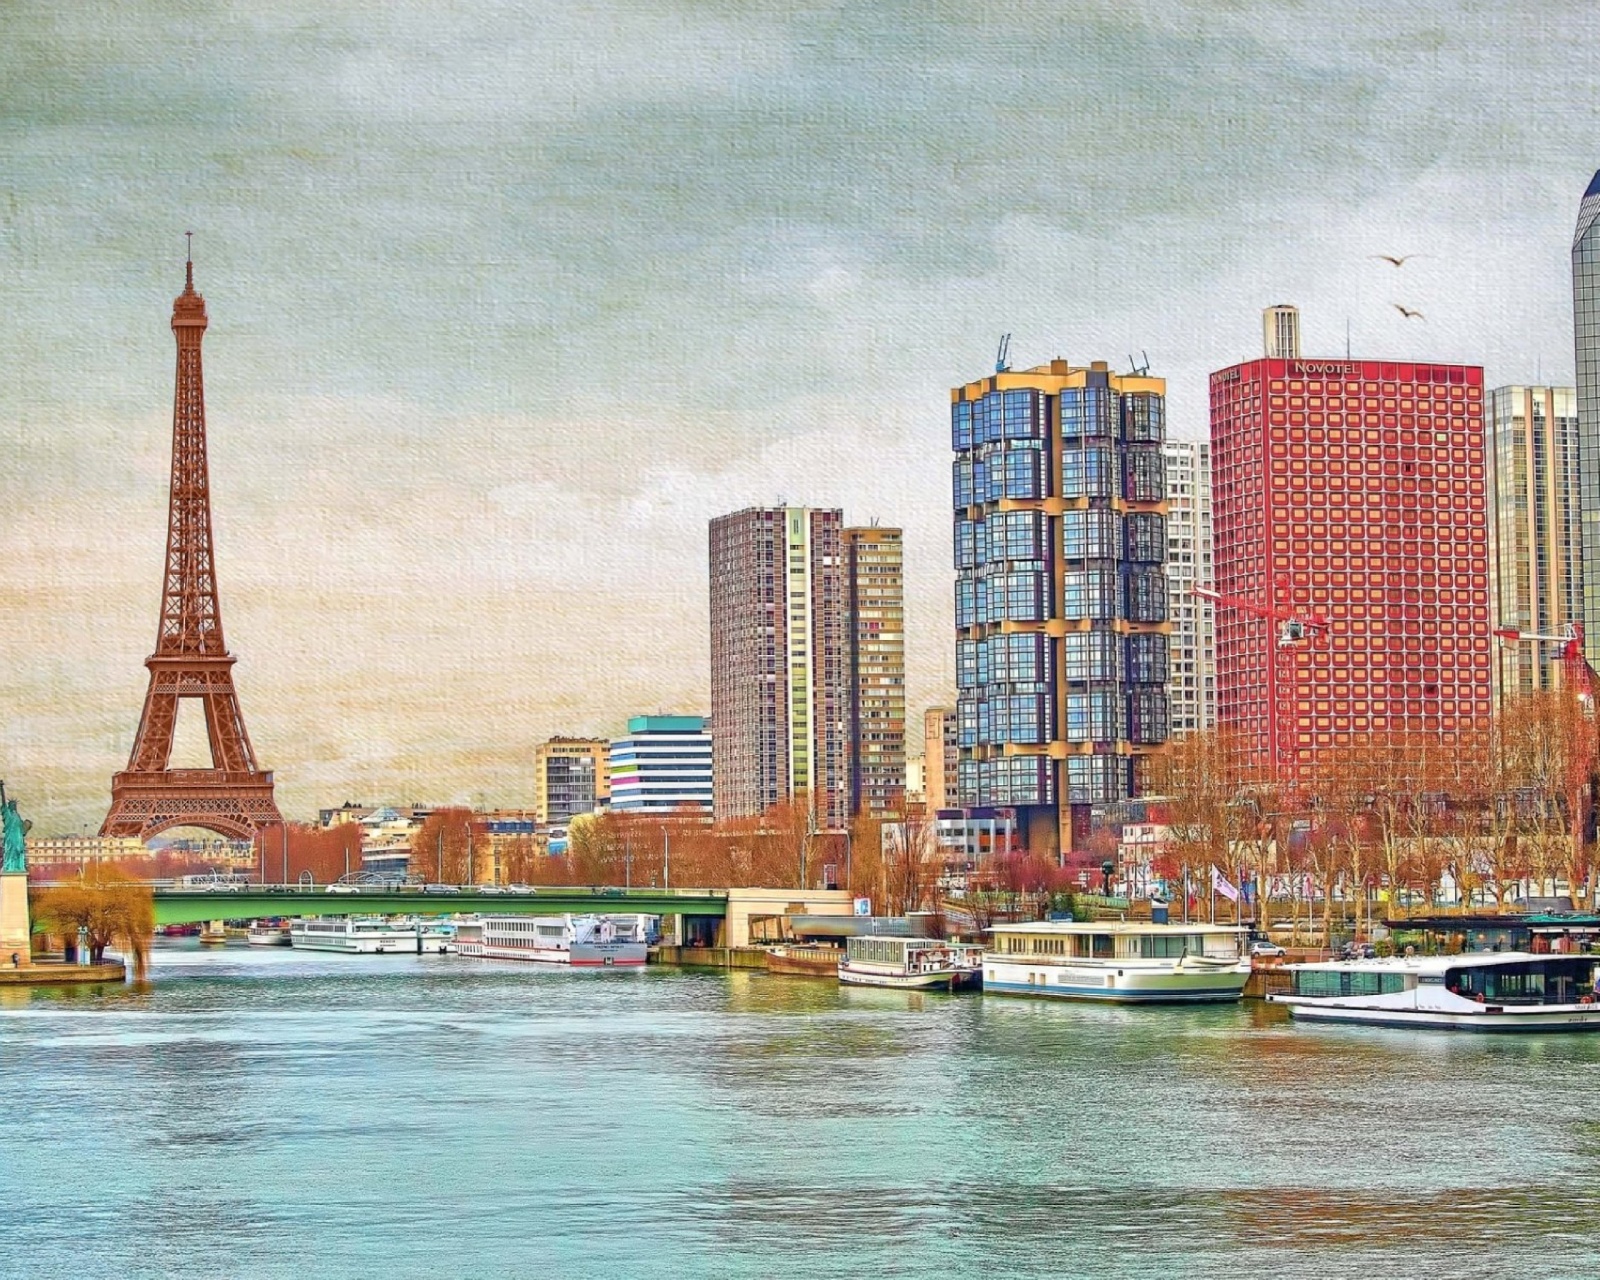 Das Eiffel Tower and Paris 16th District Wallpaper 1600x1280